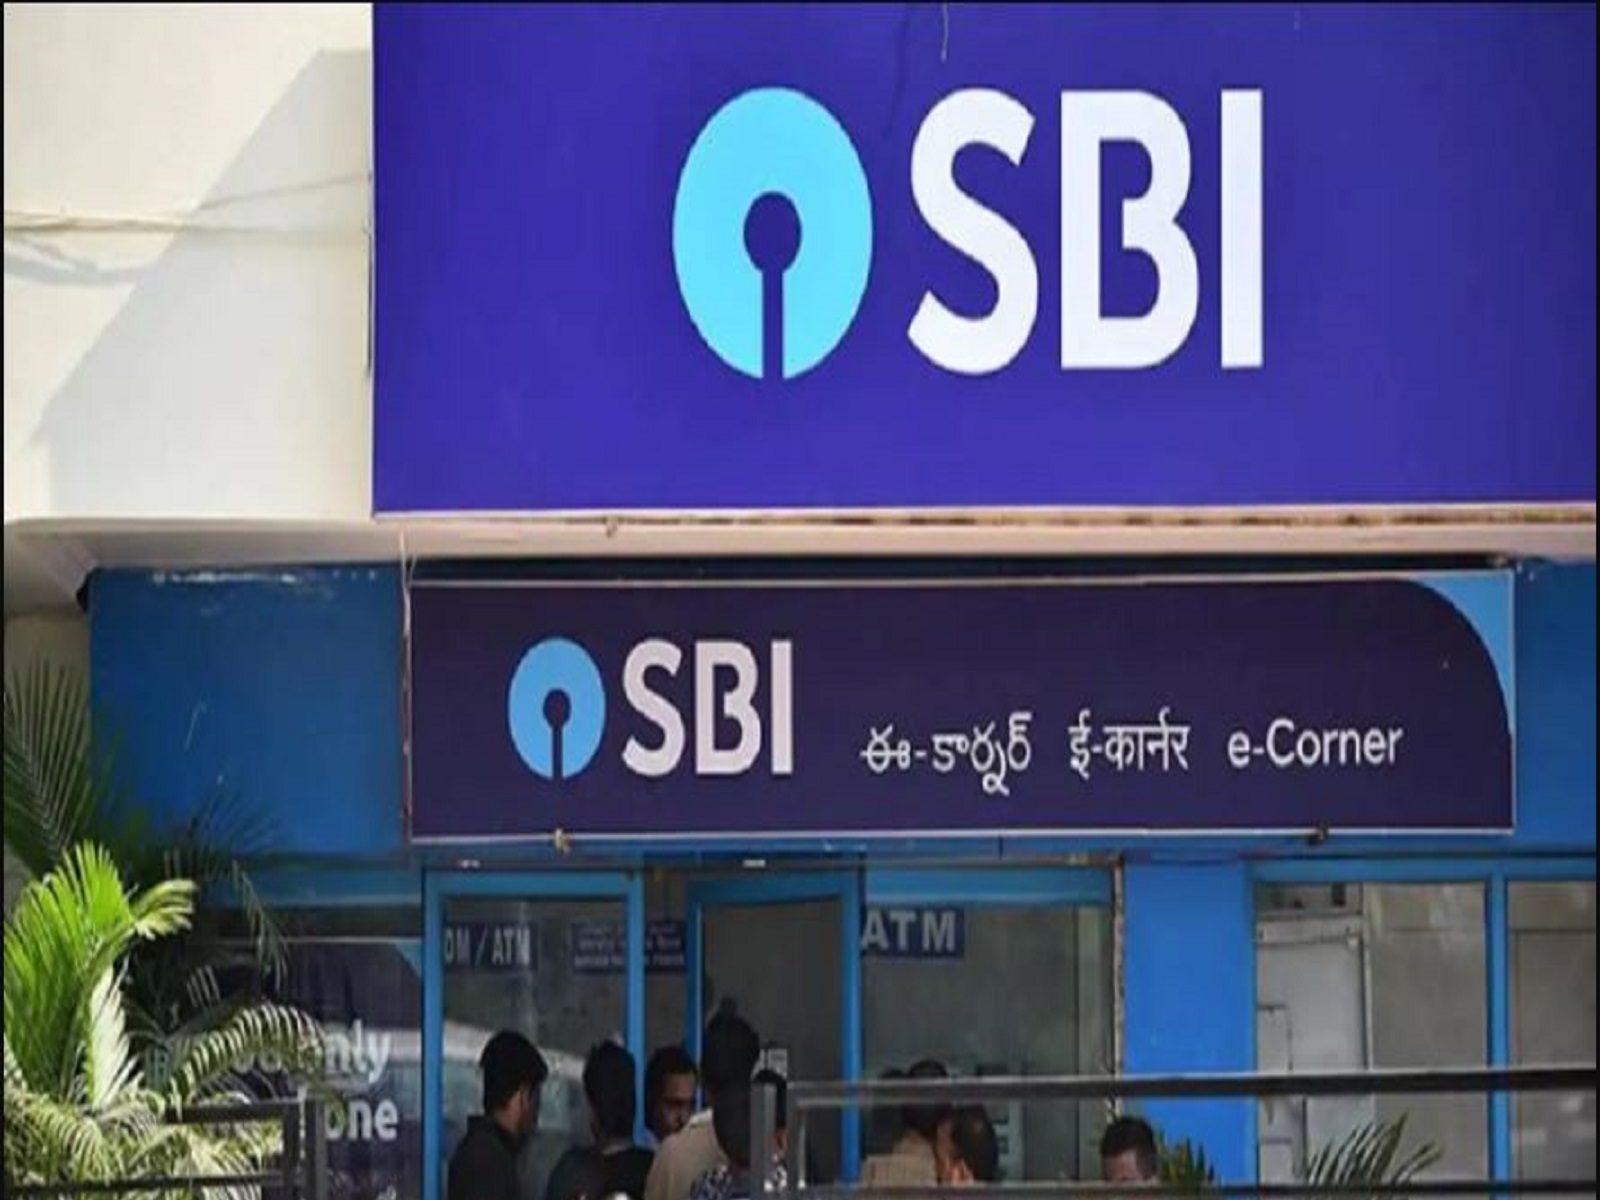 बैंक अपने जनधन खाताधारकों (SBI Jandhan Account) को 2 लाख रुपये तक का फायदा दे रहा है